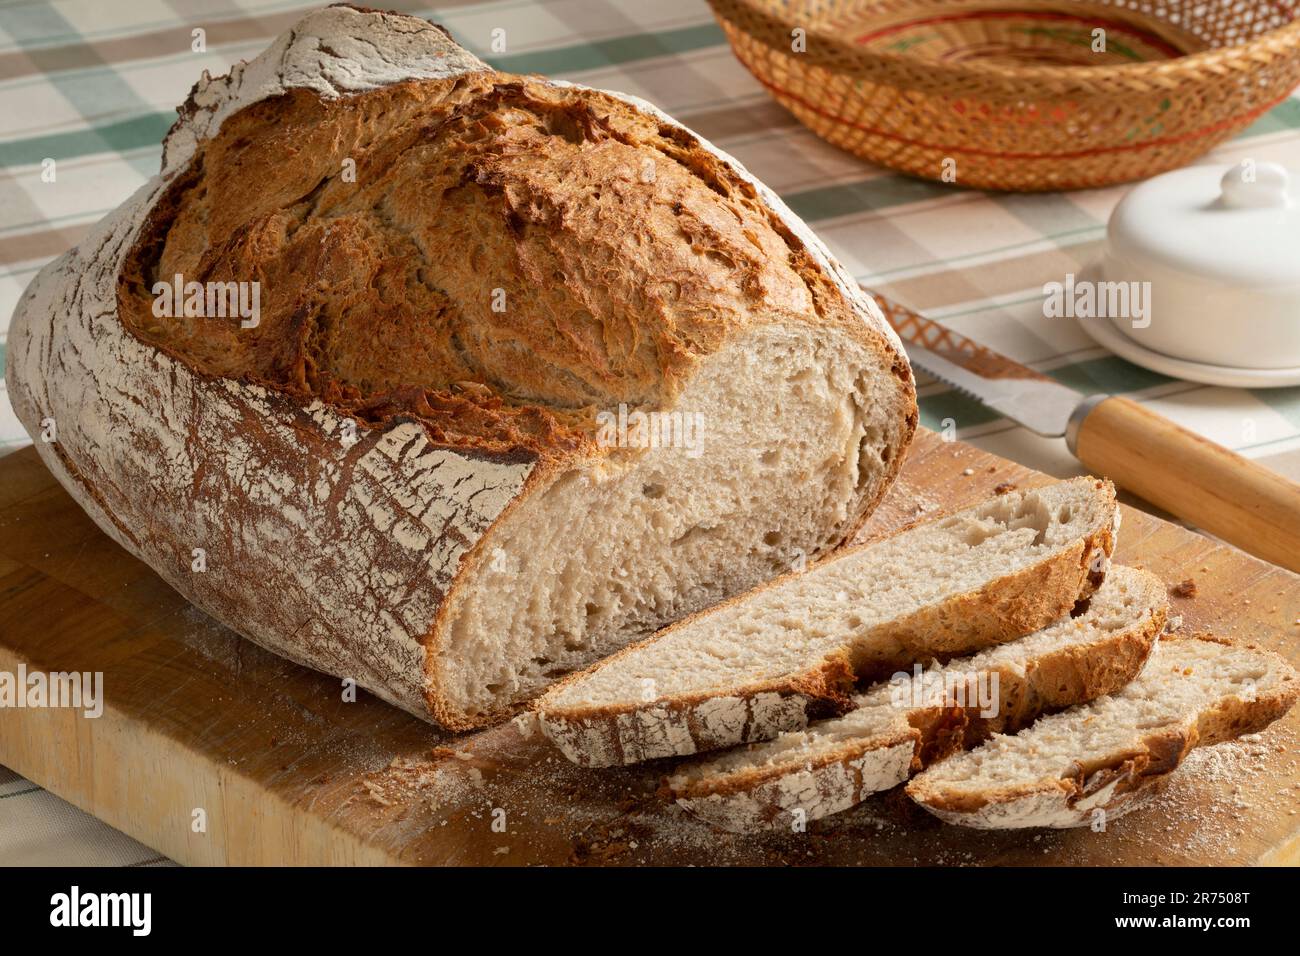 Pane fresco e fette di pasta madre contadini pane primo piano su un tagliere Foto Stock